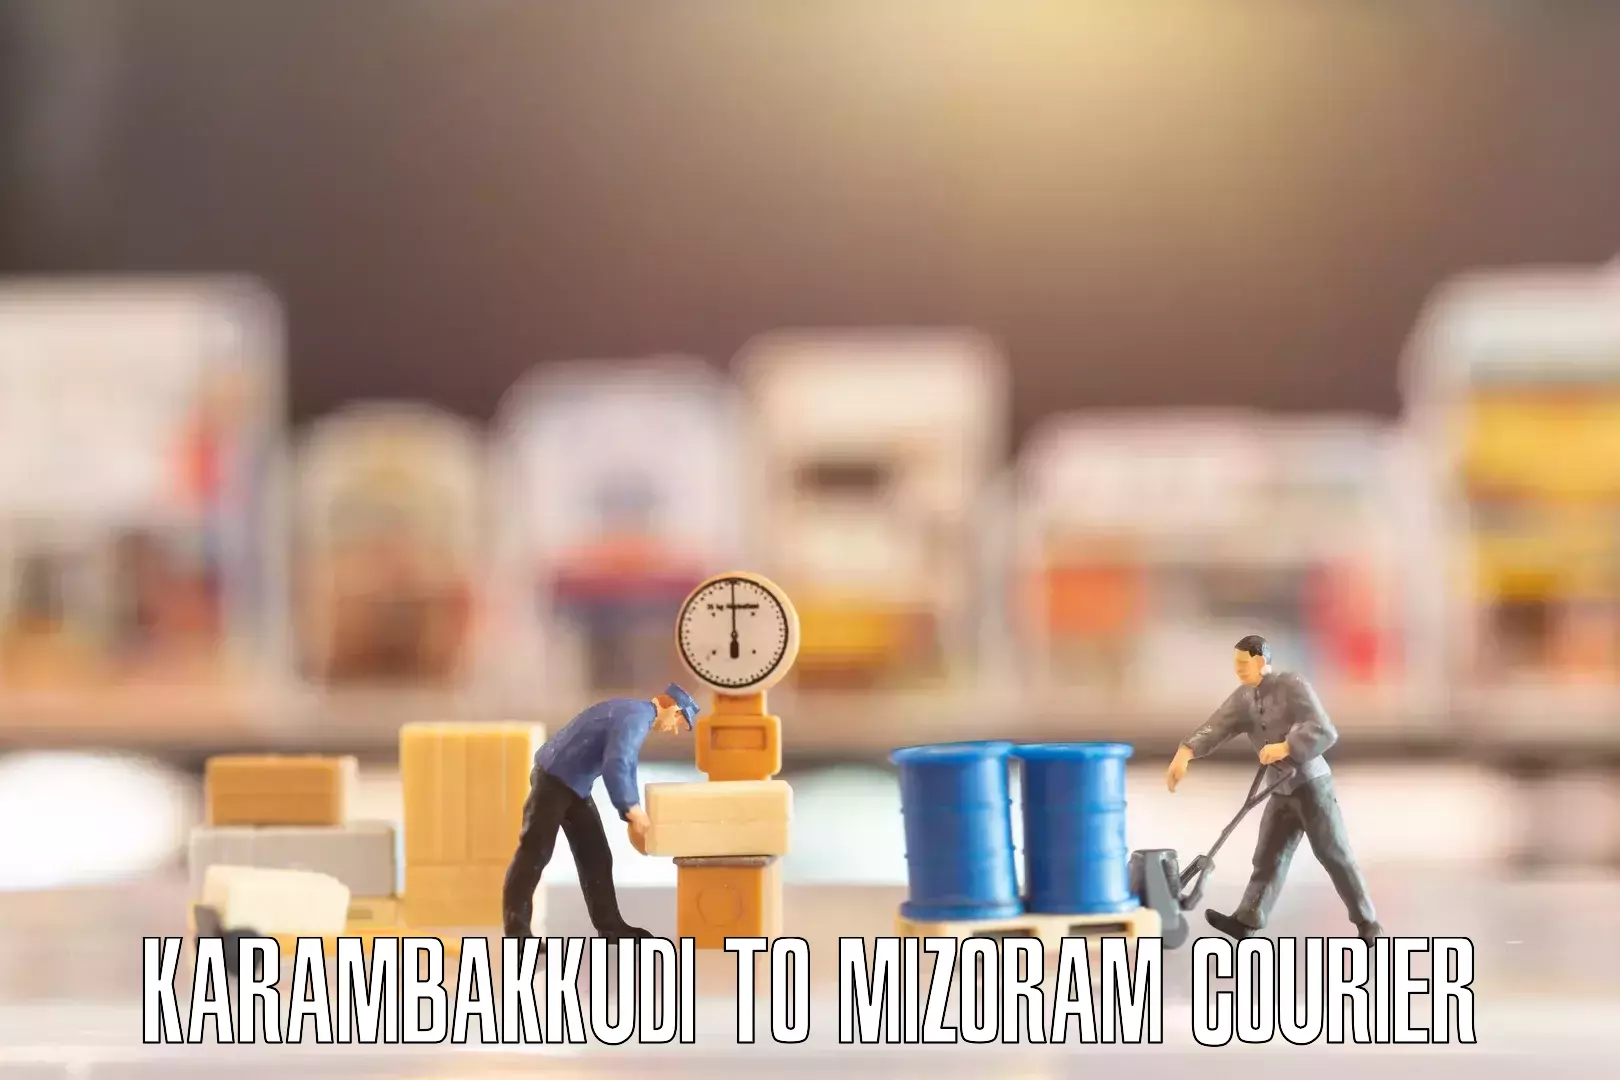 Quality furniture moving Karambakkudi to Mizoram